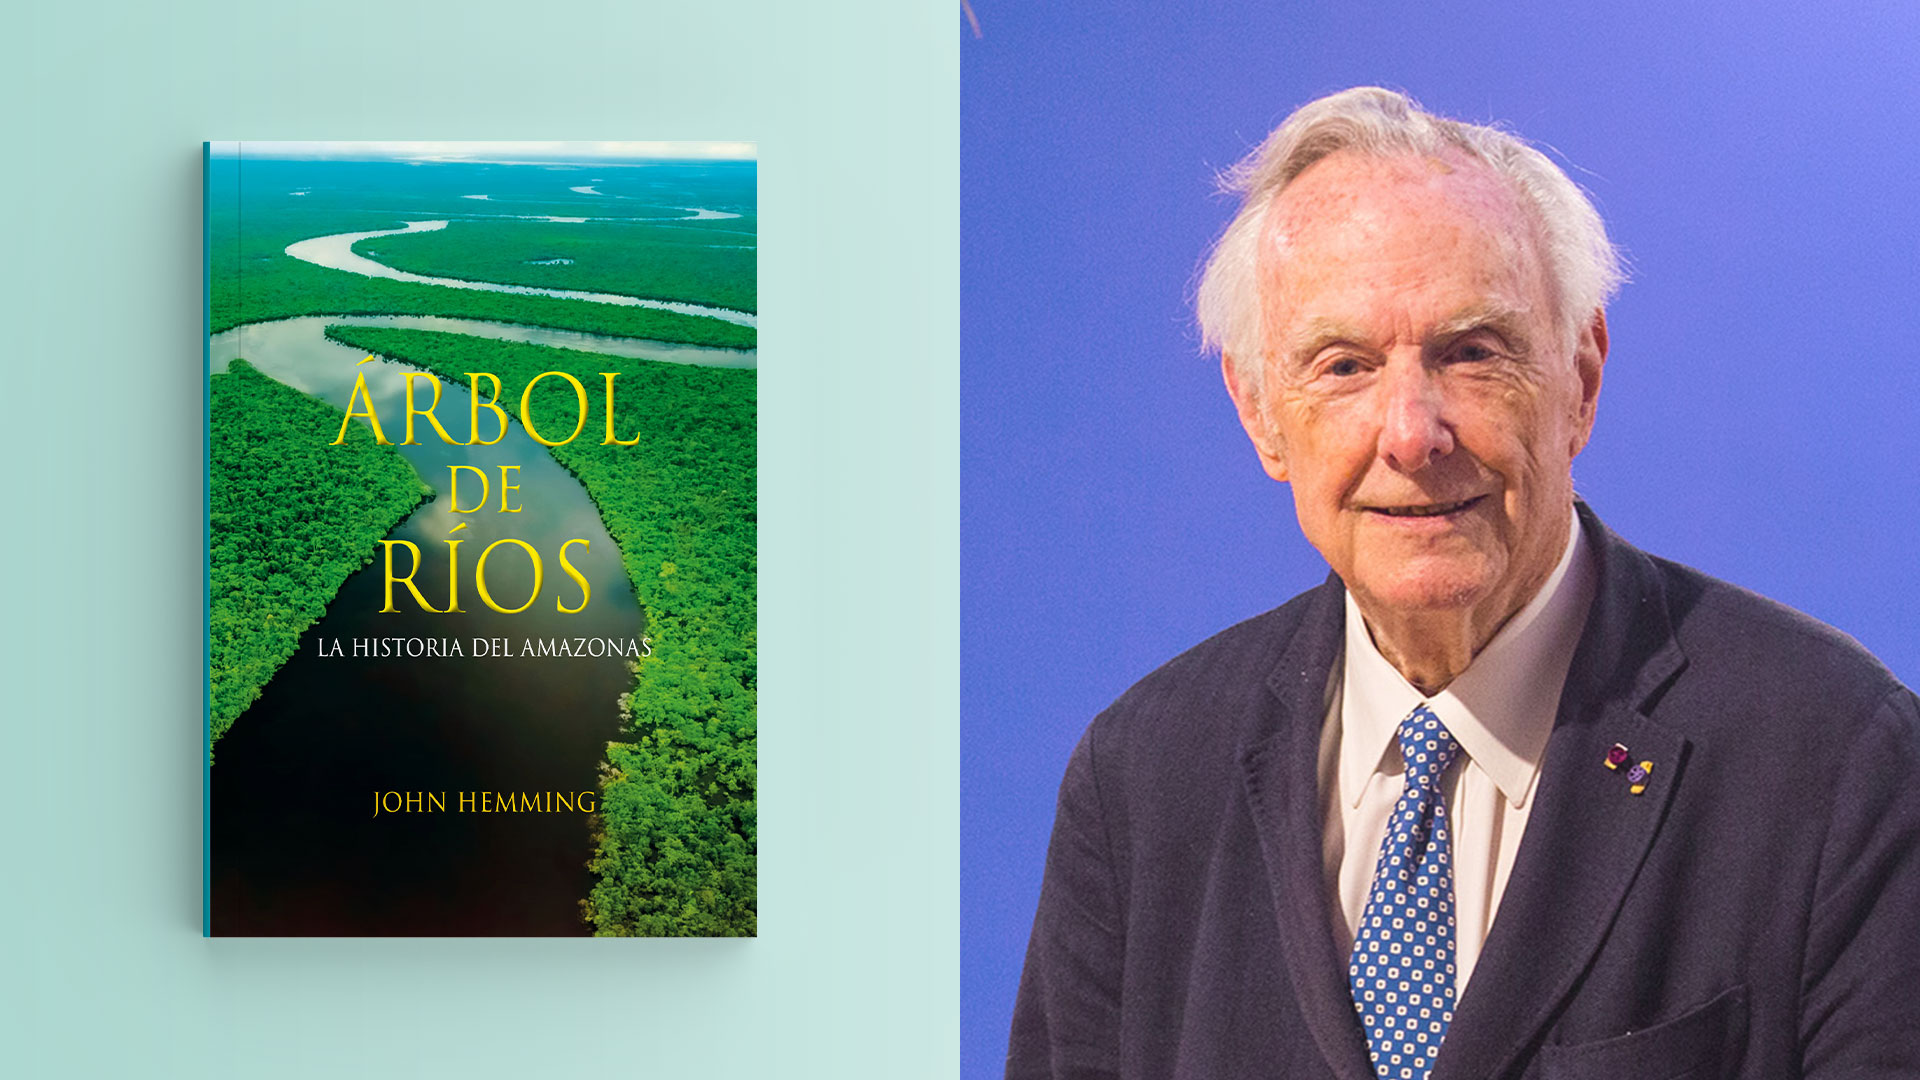 Fotos de libro Árbol de ríos La historia del Amazonas y John Hemming.